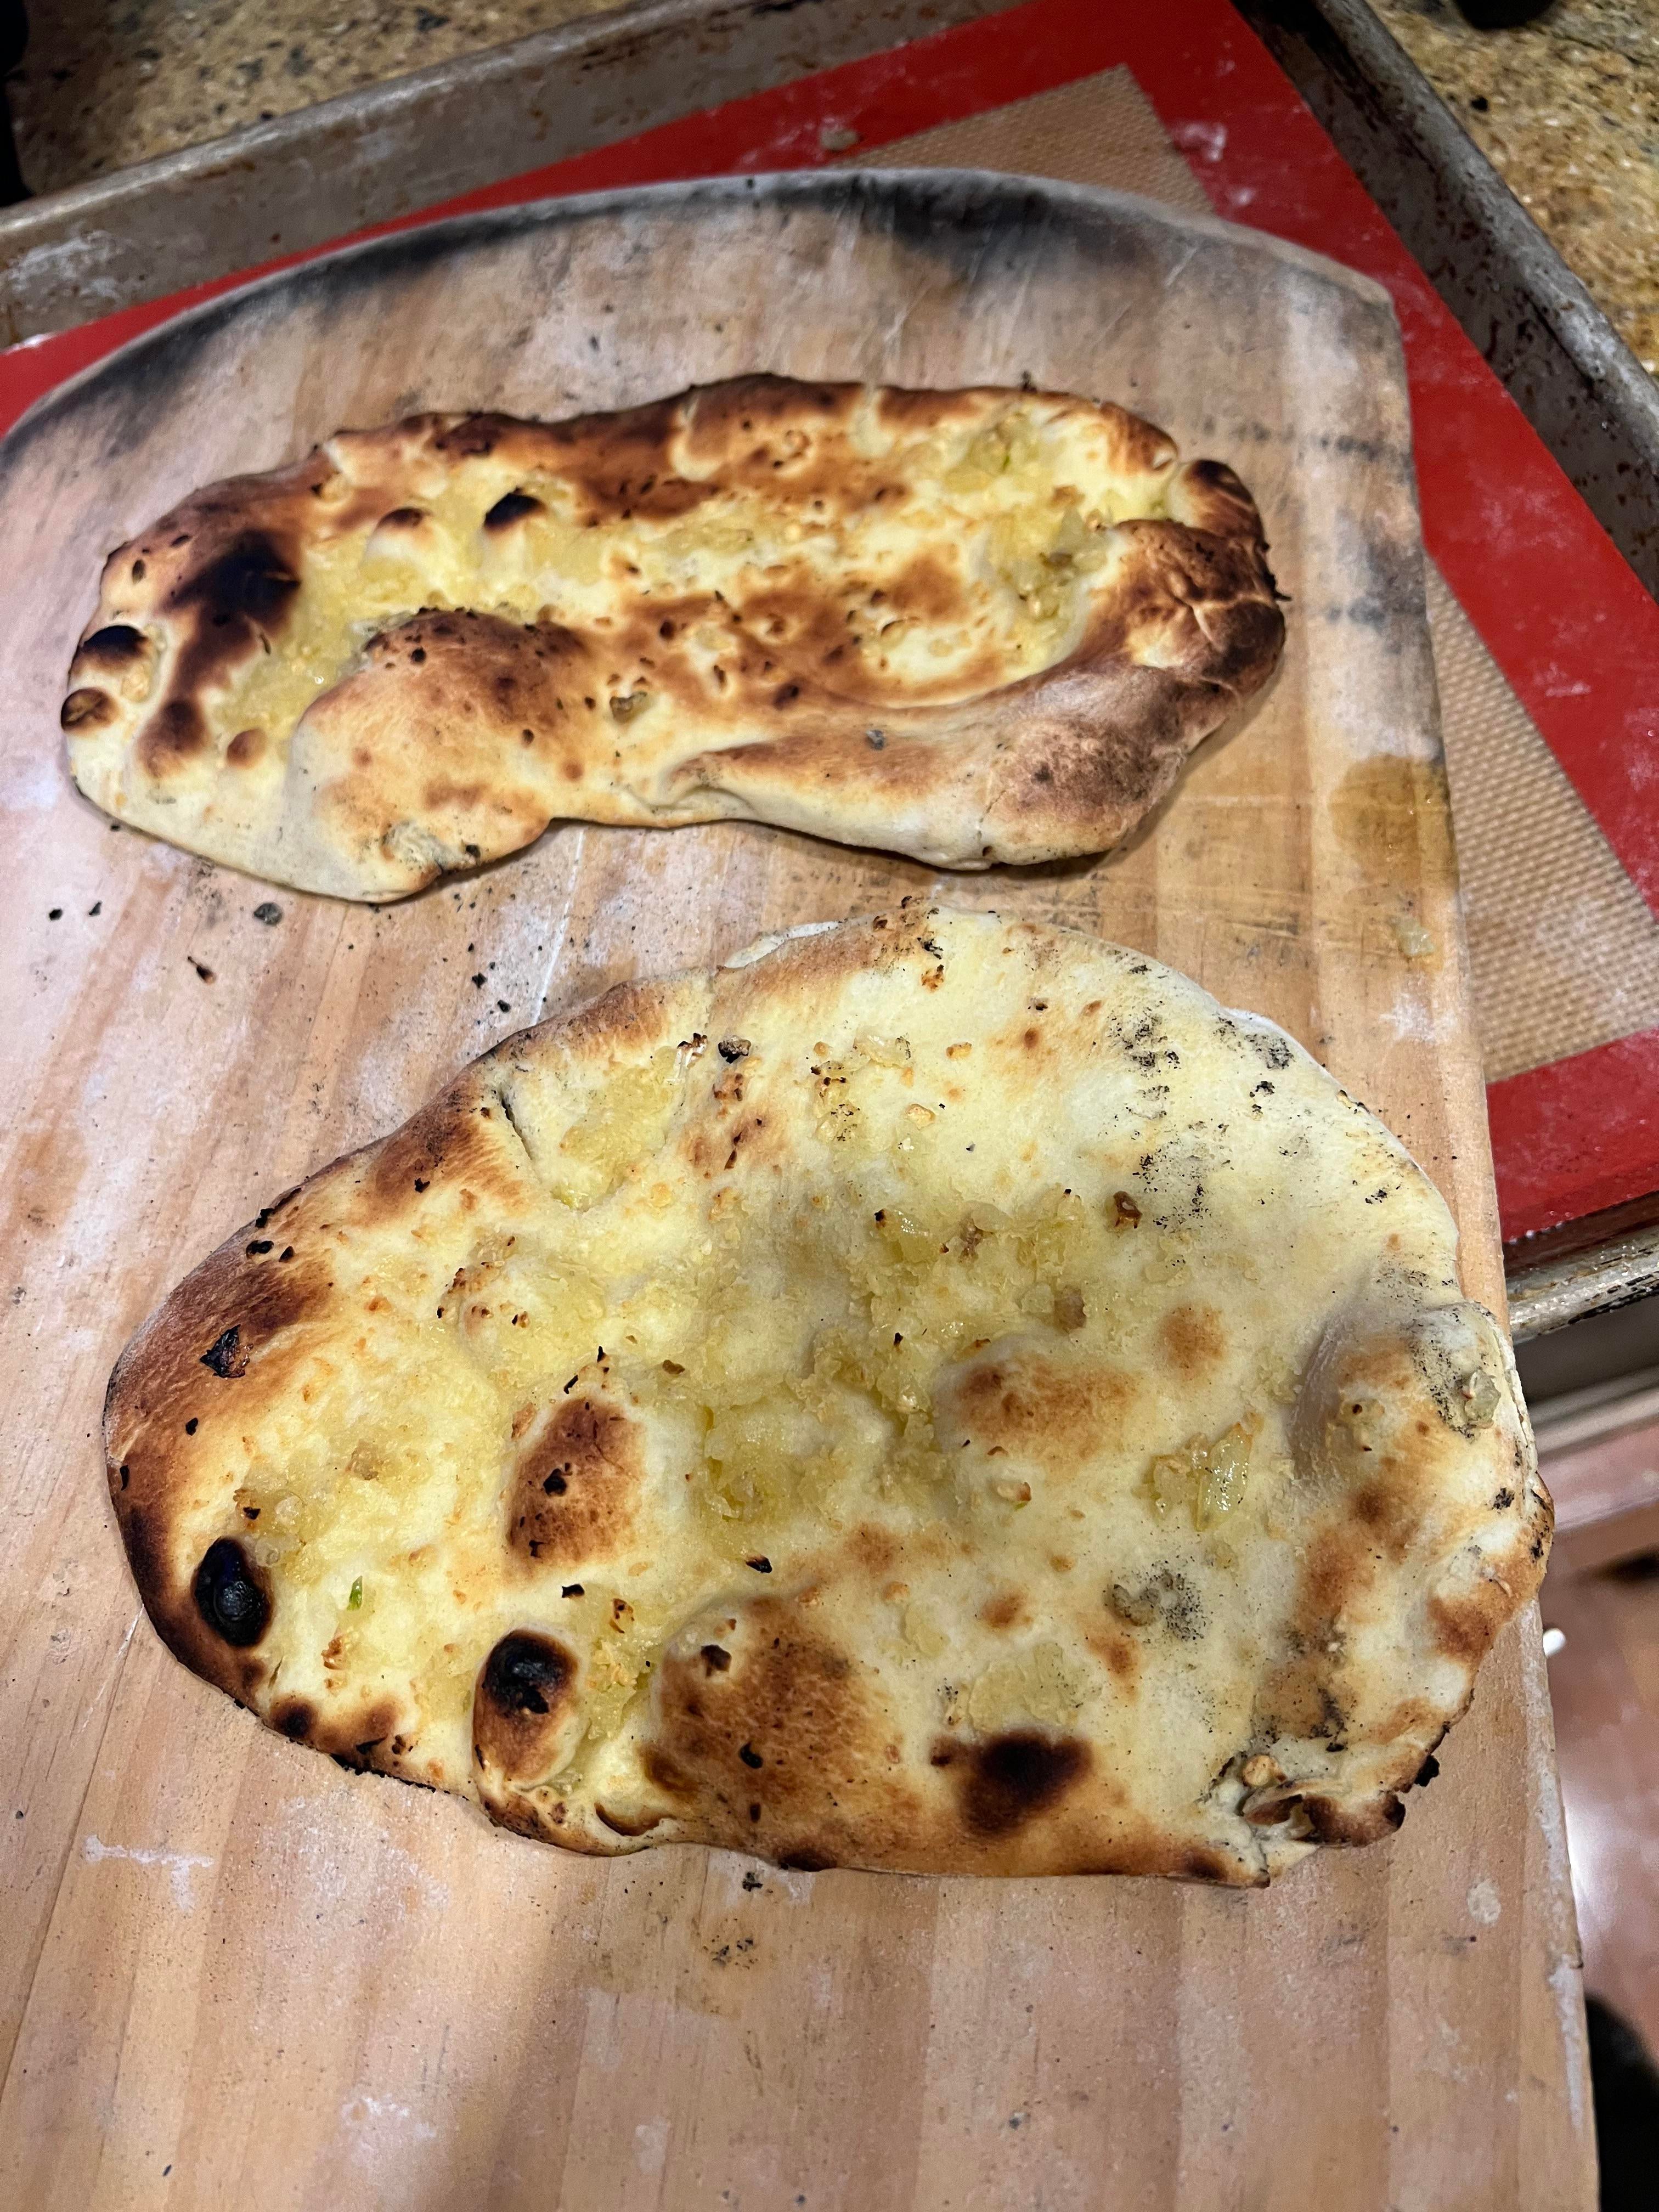 huren merk op wortel Indian style naan bread on Ooni pizza oven. - Dining and Cooking